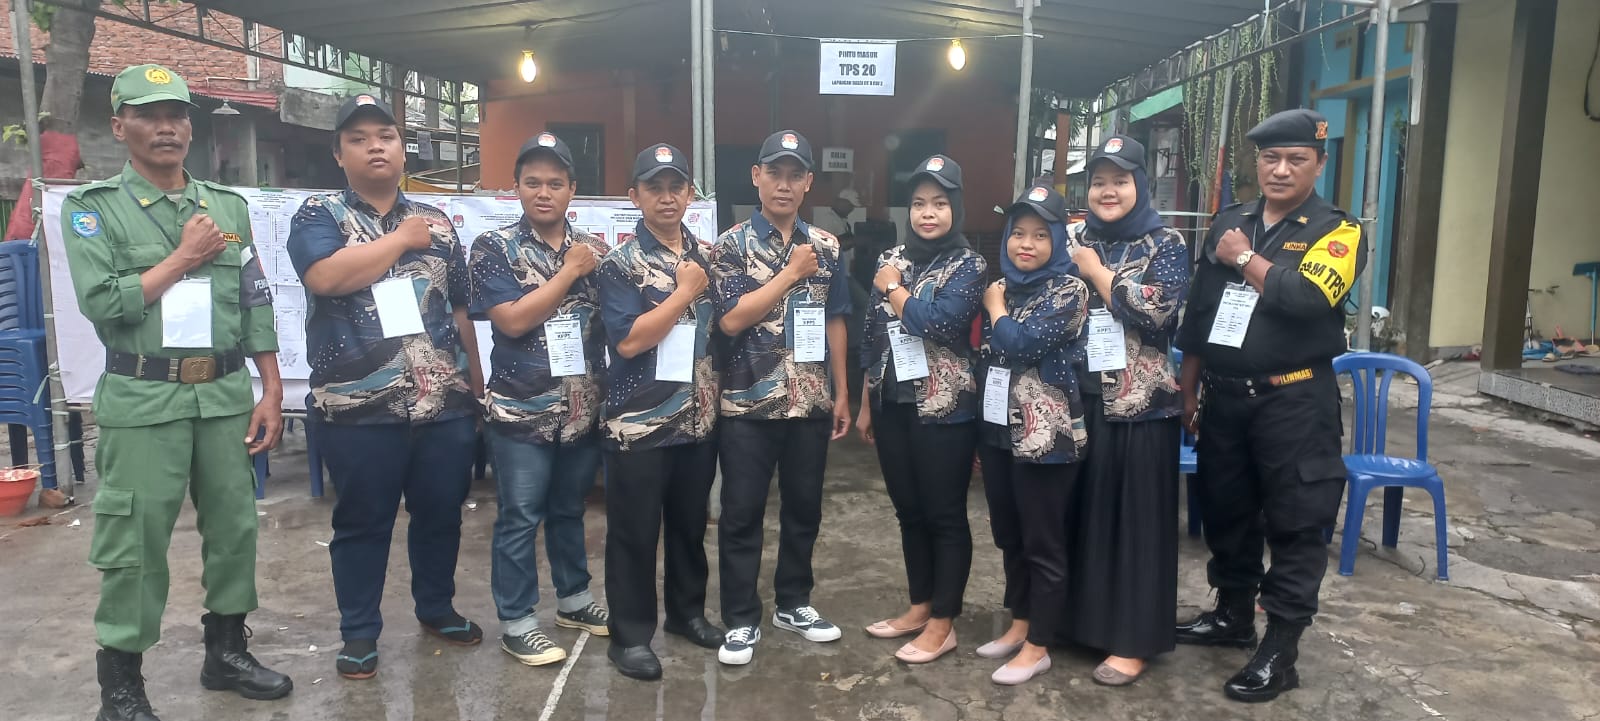 Petugas TPS 20 Berbalut Batik, Semangat Cinta Produk Dalam Negeri